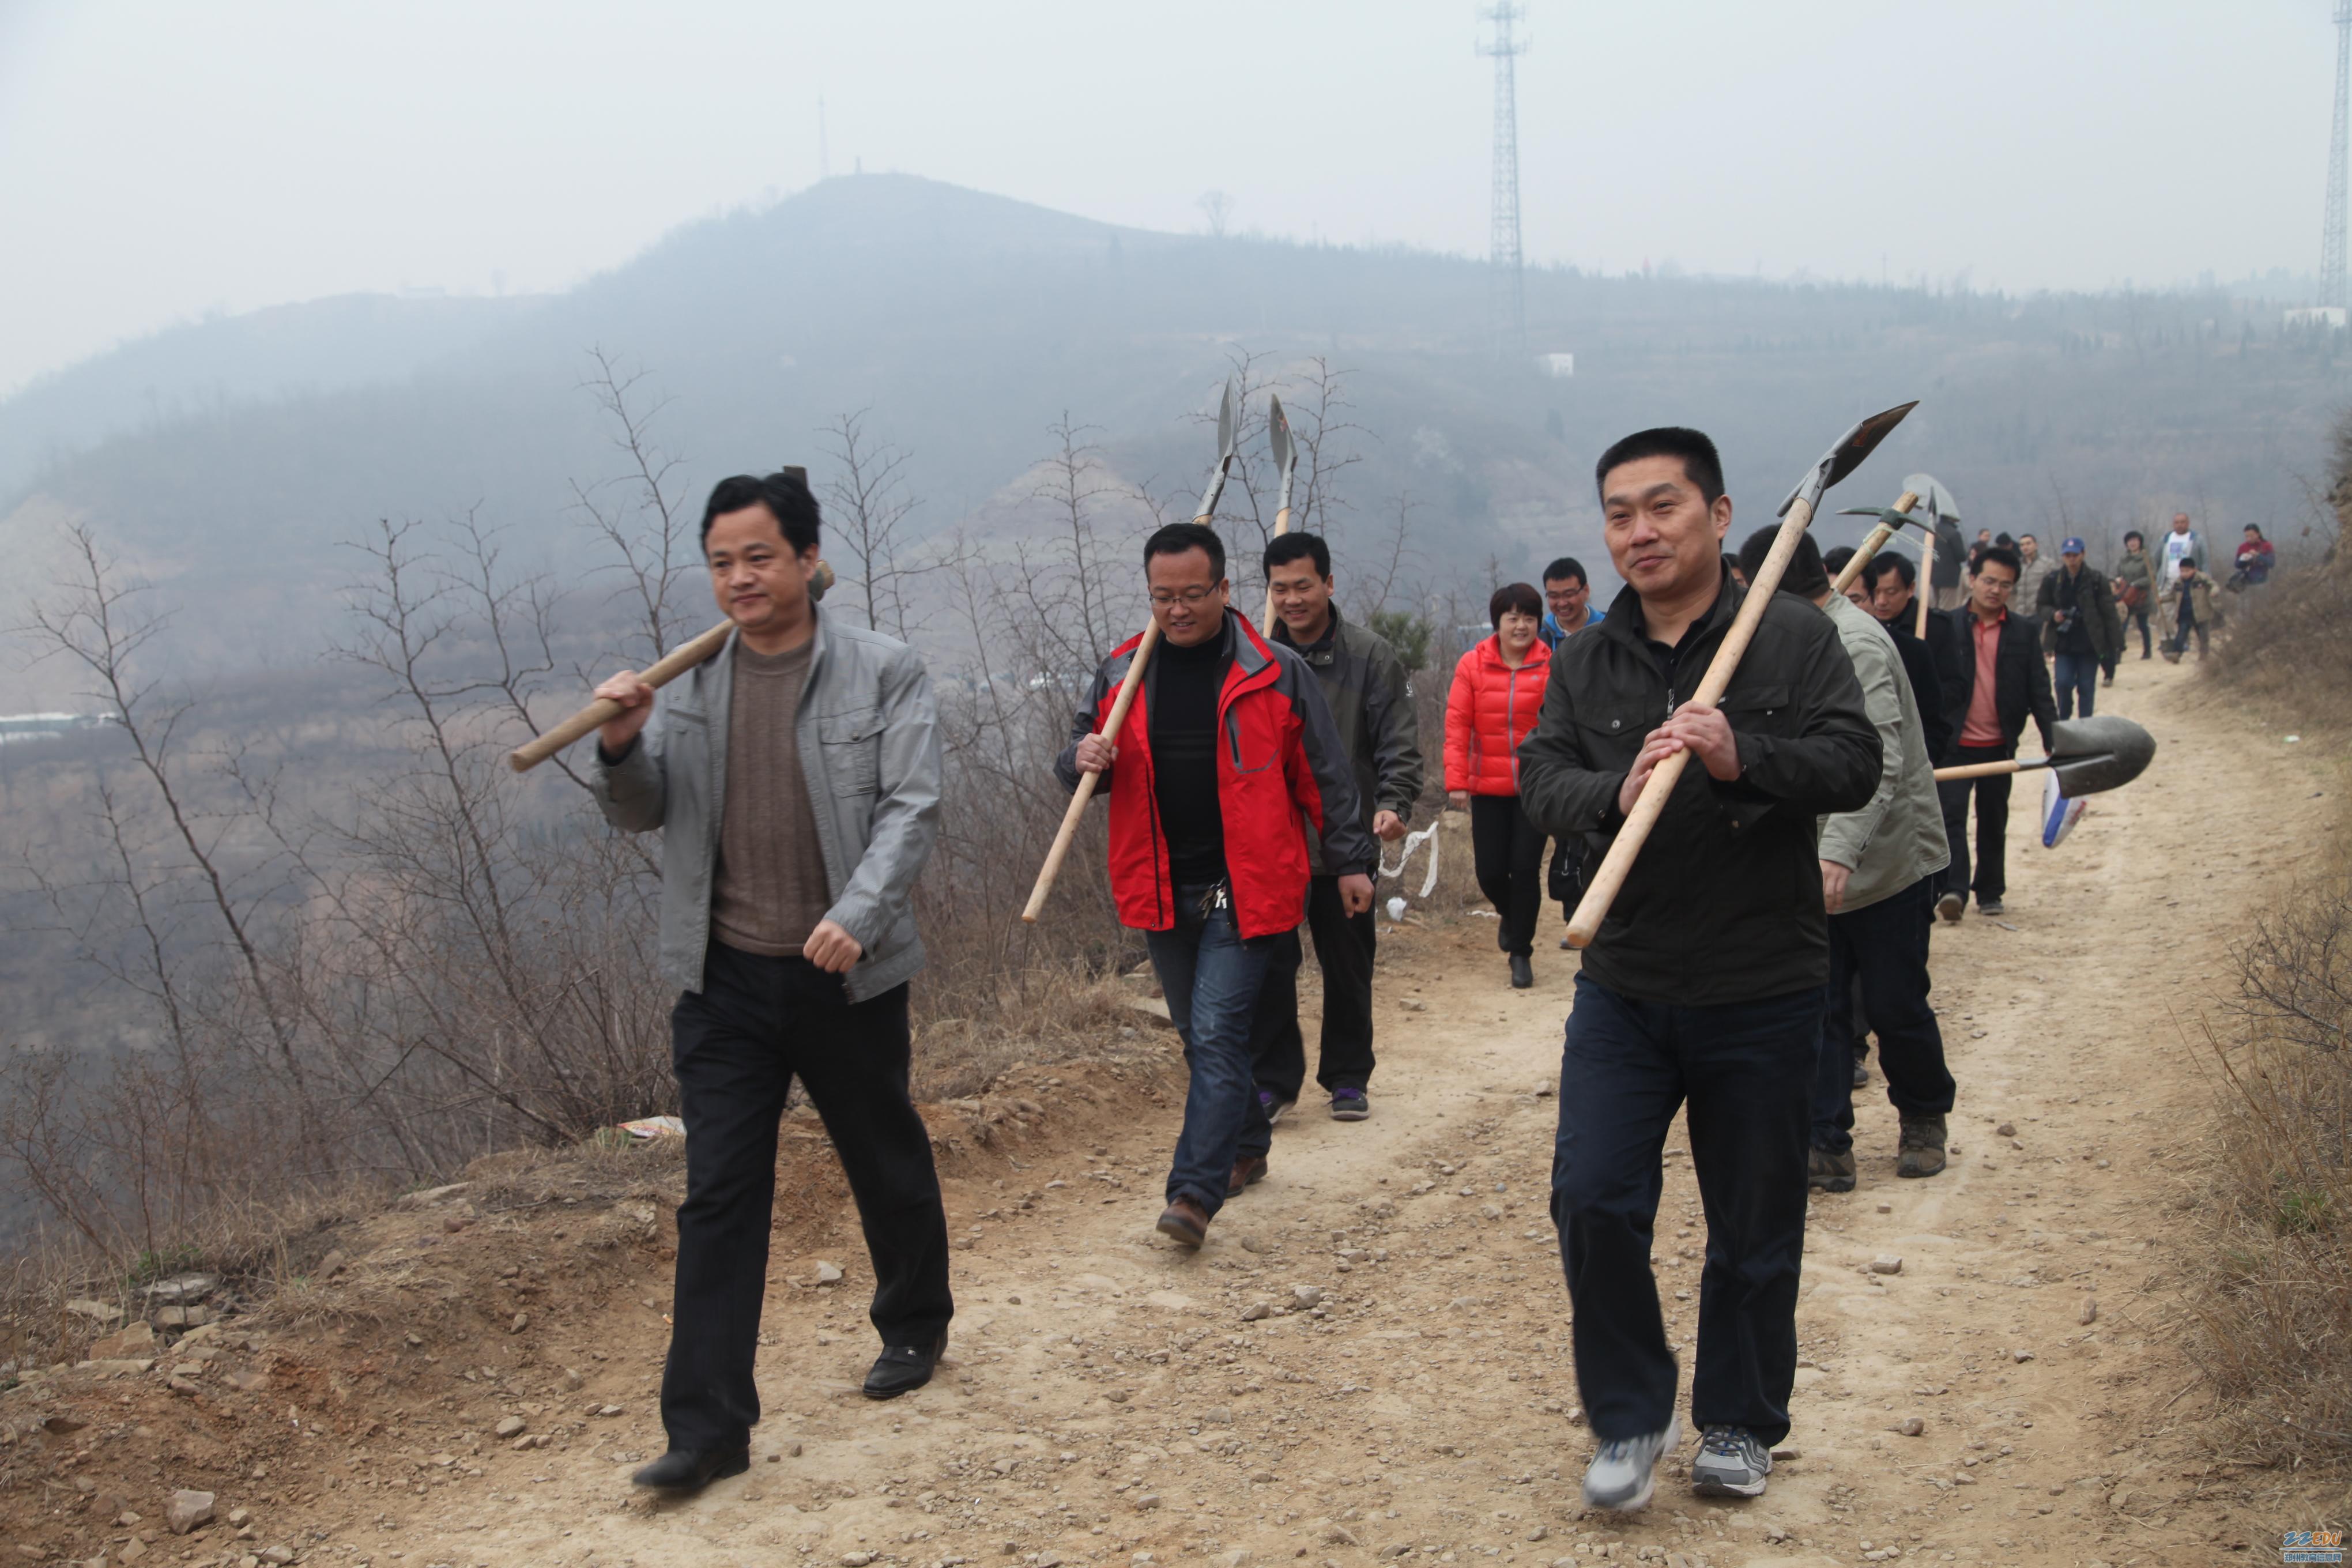 志愿者队伍在朱红军校长的带领下扛着铁锹,迈着矫健的步伐向植树地点